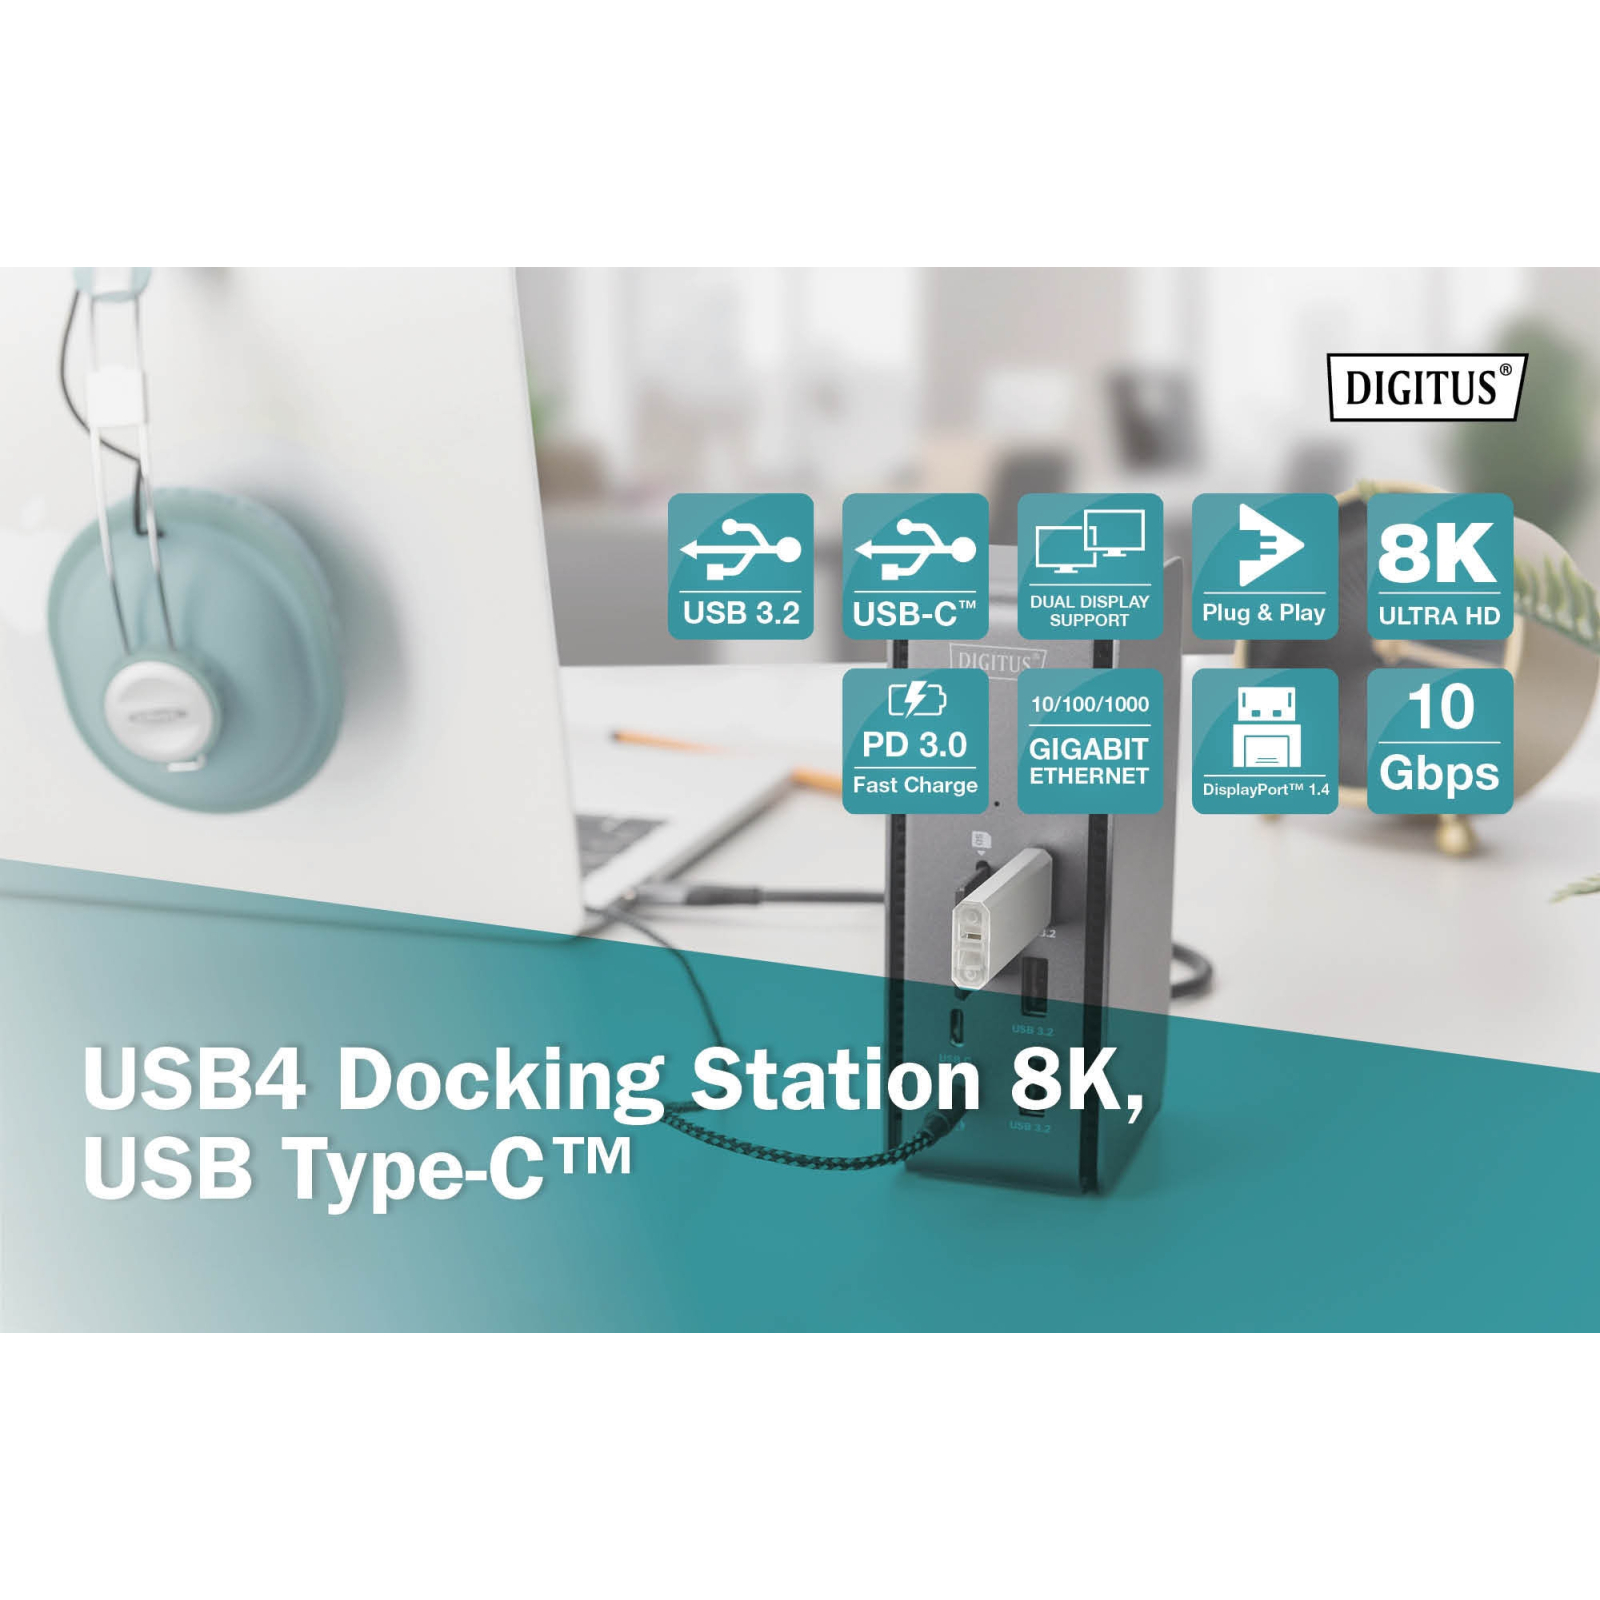 Порт-репликатор Digitus USB 4 Docking Station 8K, USB Type-C, 14 Port (DA-70897) изображение 11